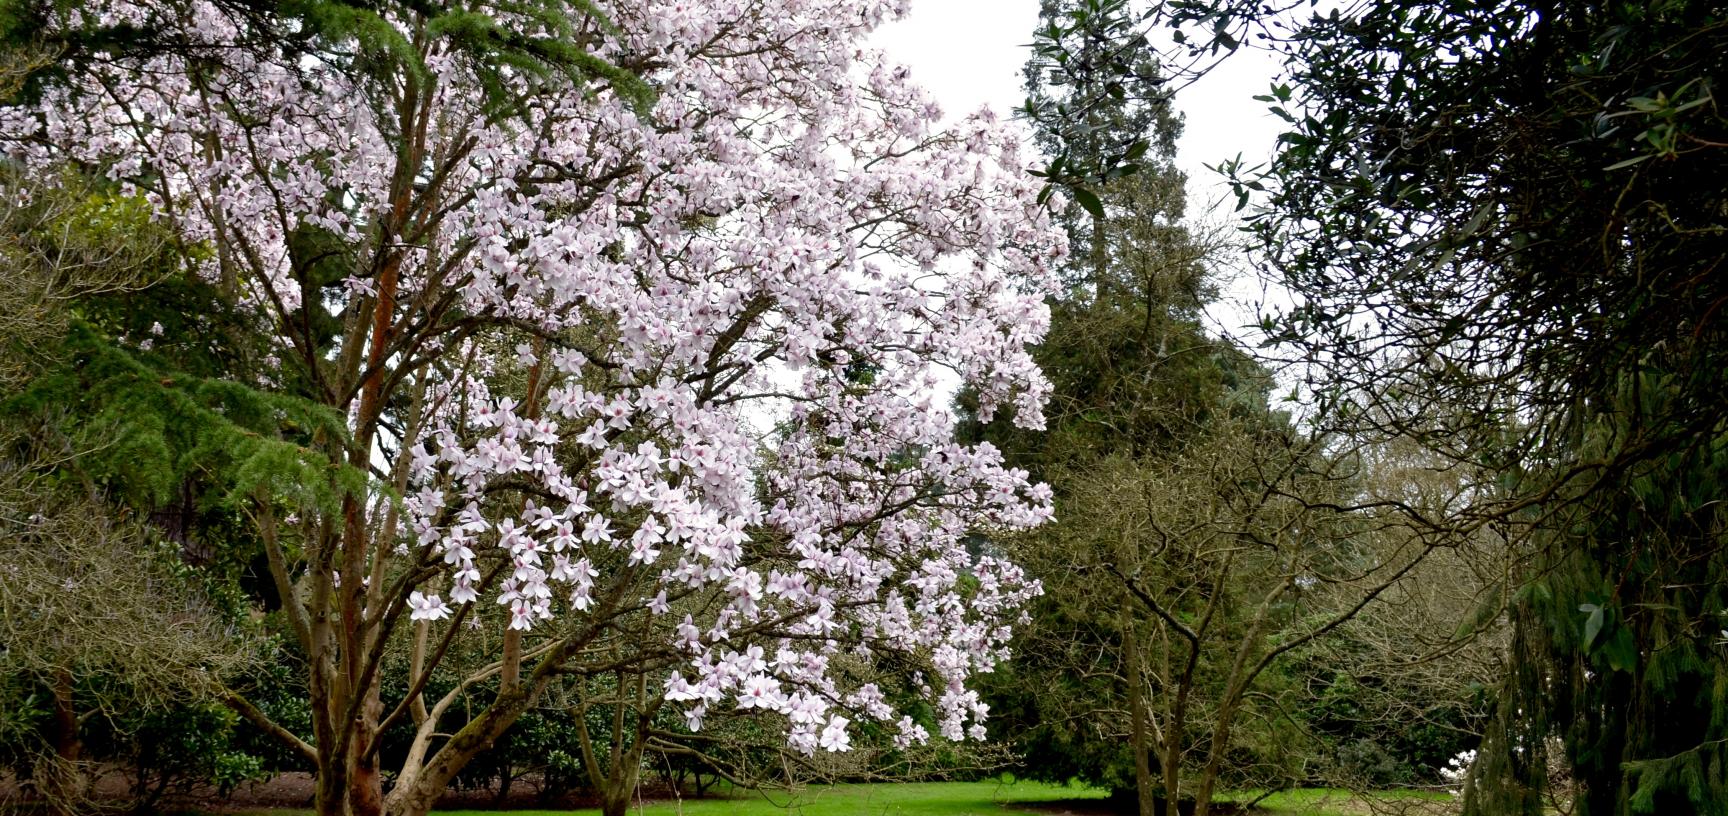 Magnolia Glade in March